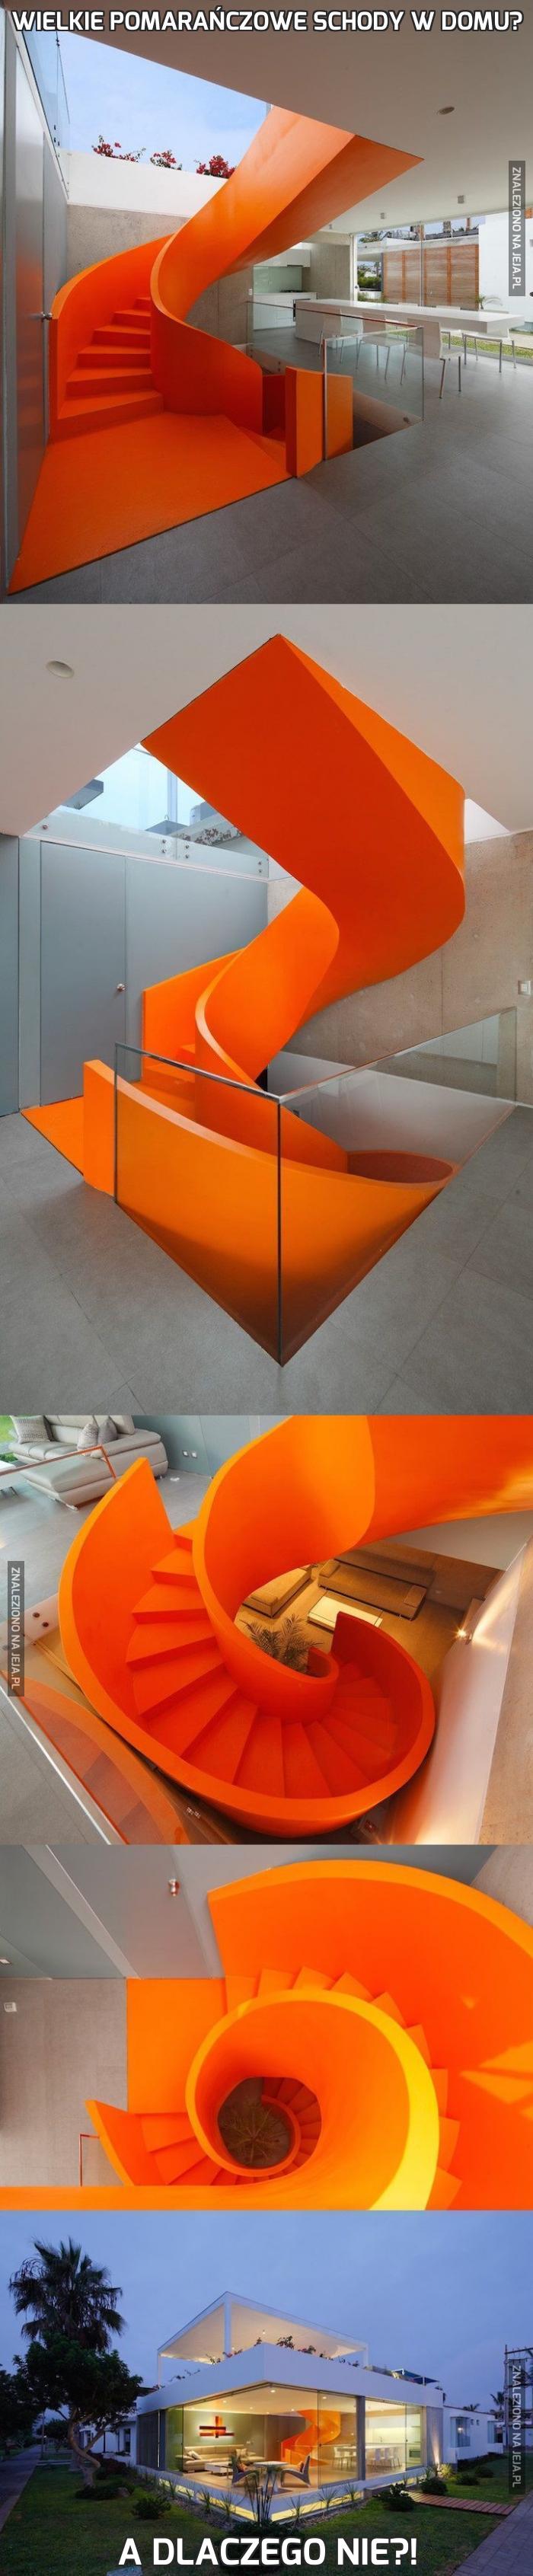 Wielkie pomarańczowe schody w domu?